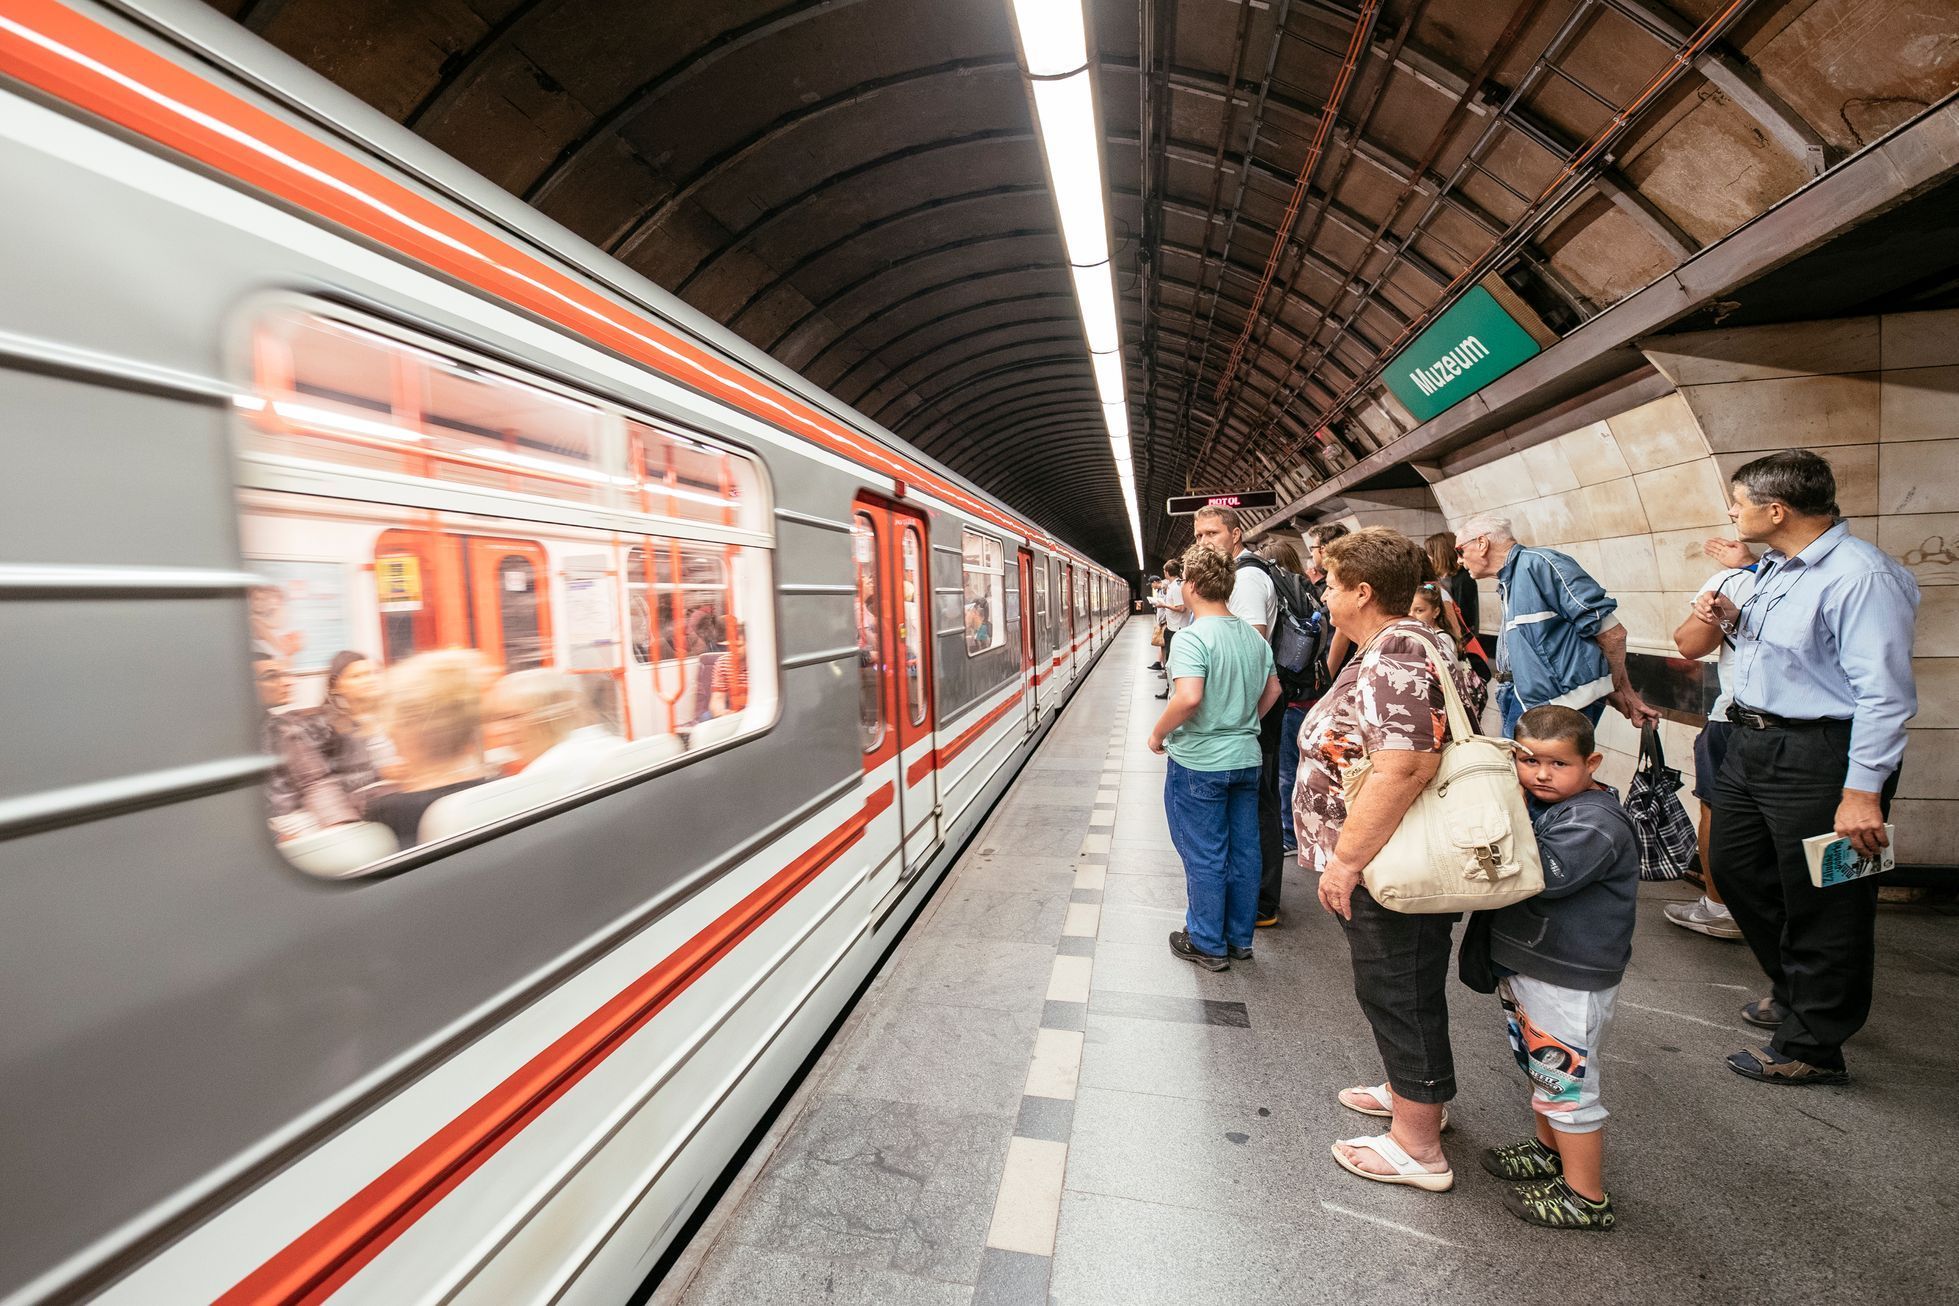 ilustrační fotografie, metro, MHD, doprava, město, Praha 2017